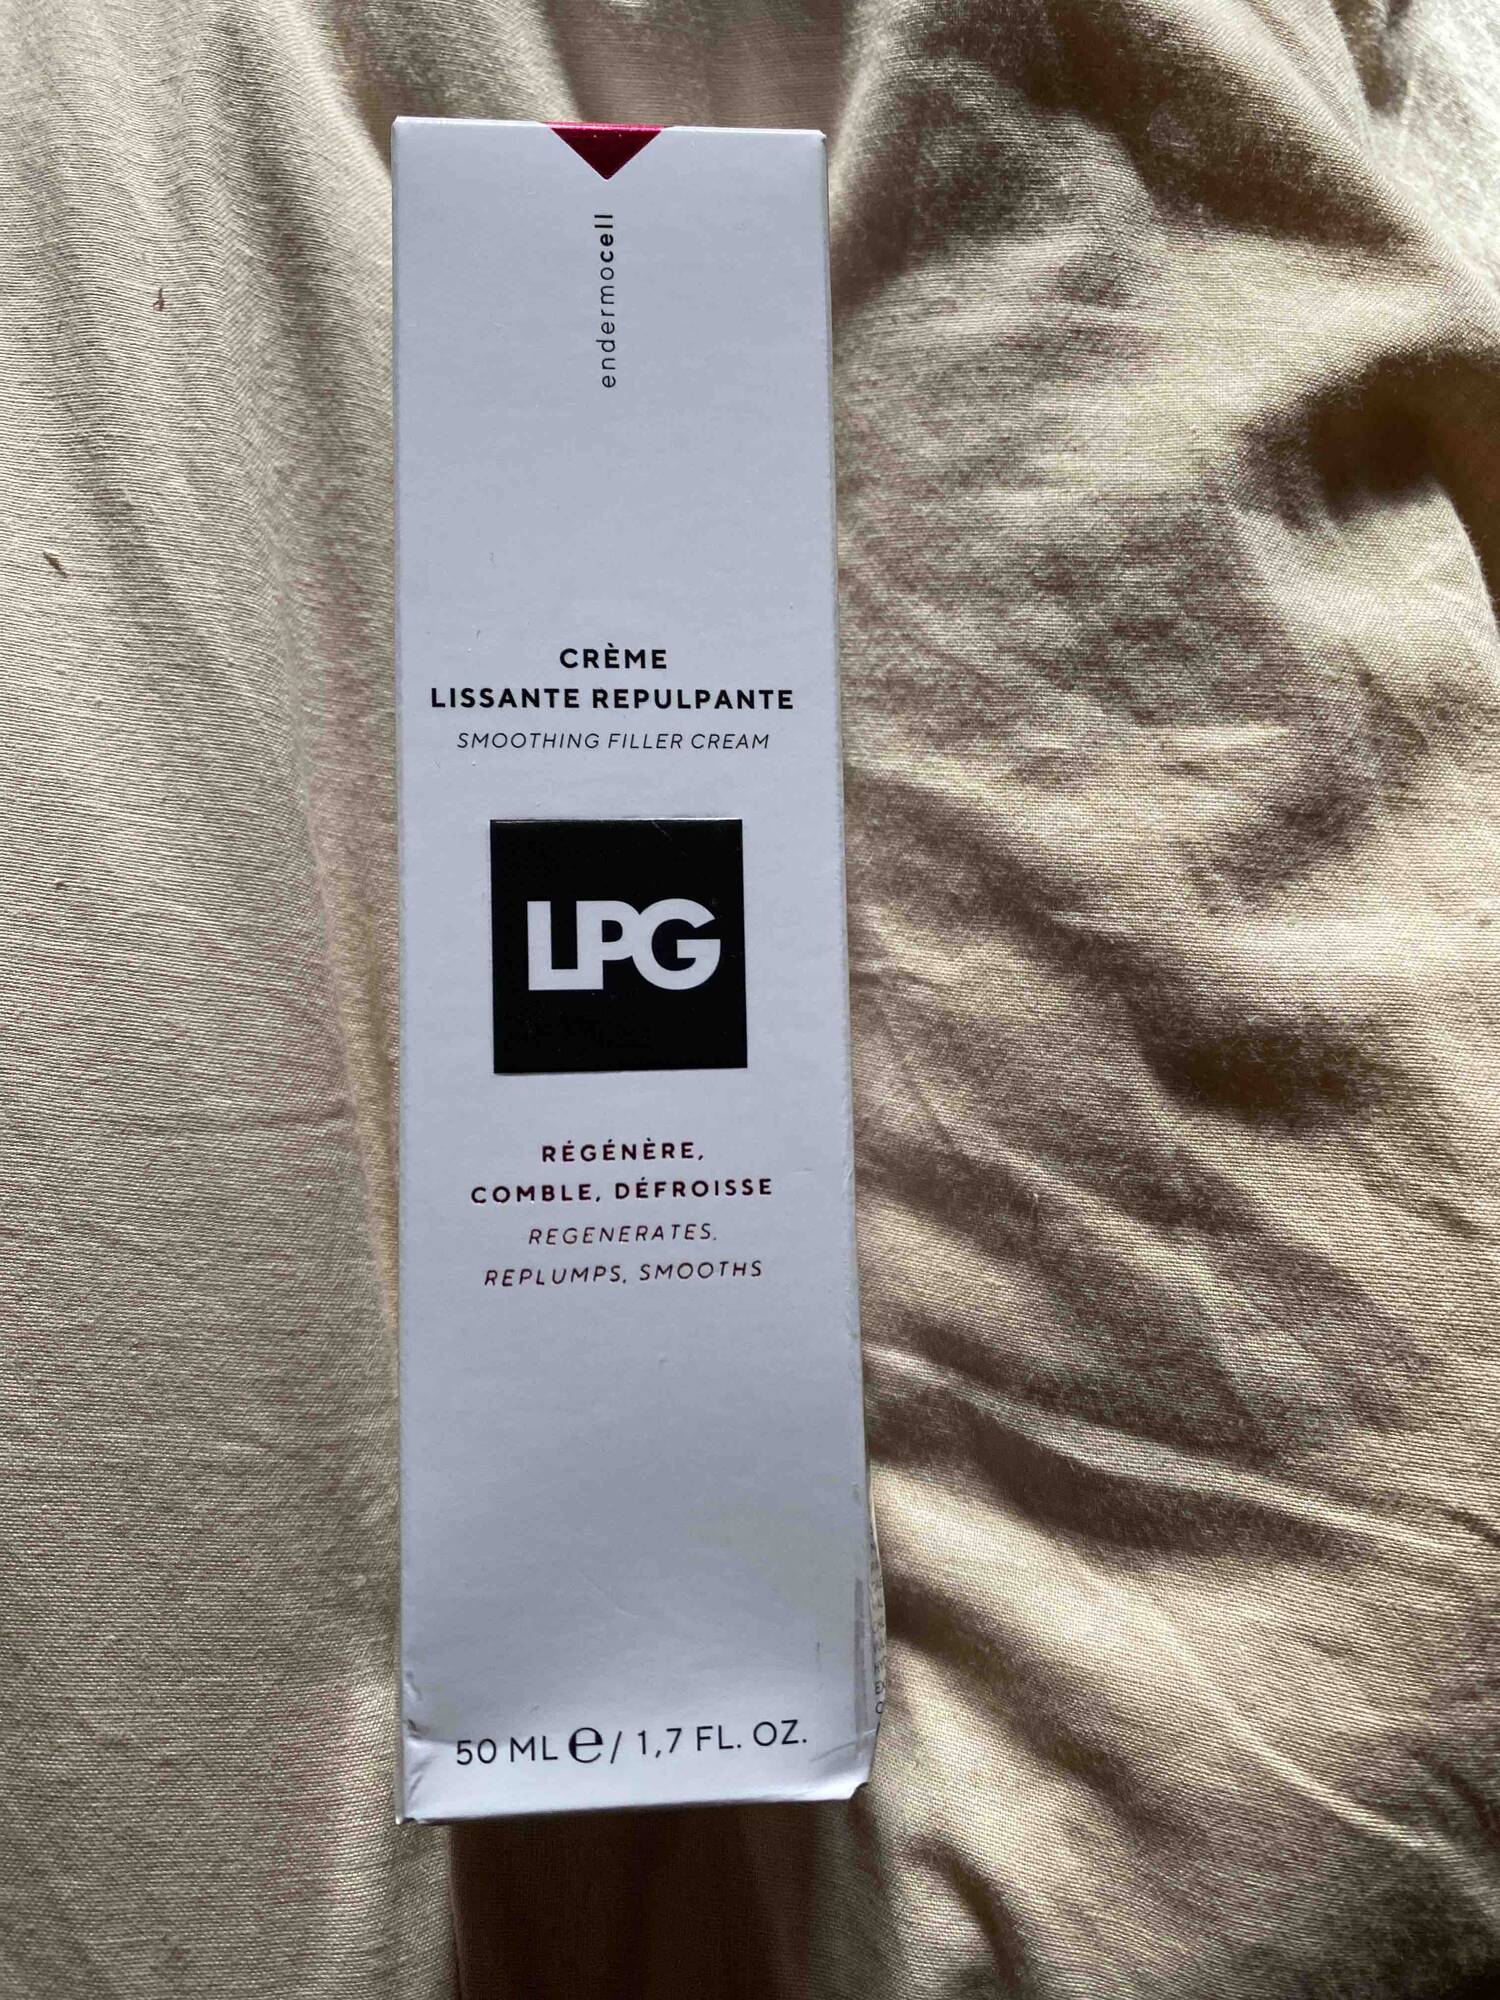 LPG - Crème lissante repulpante